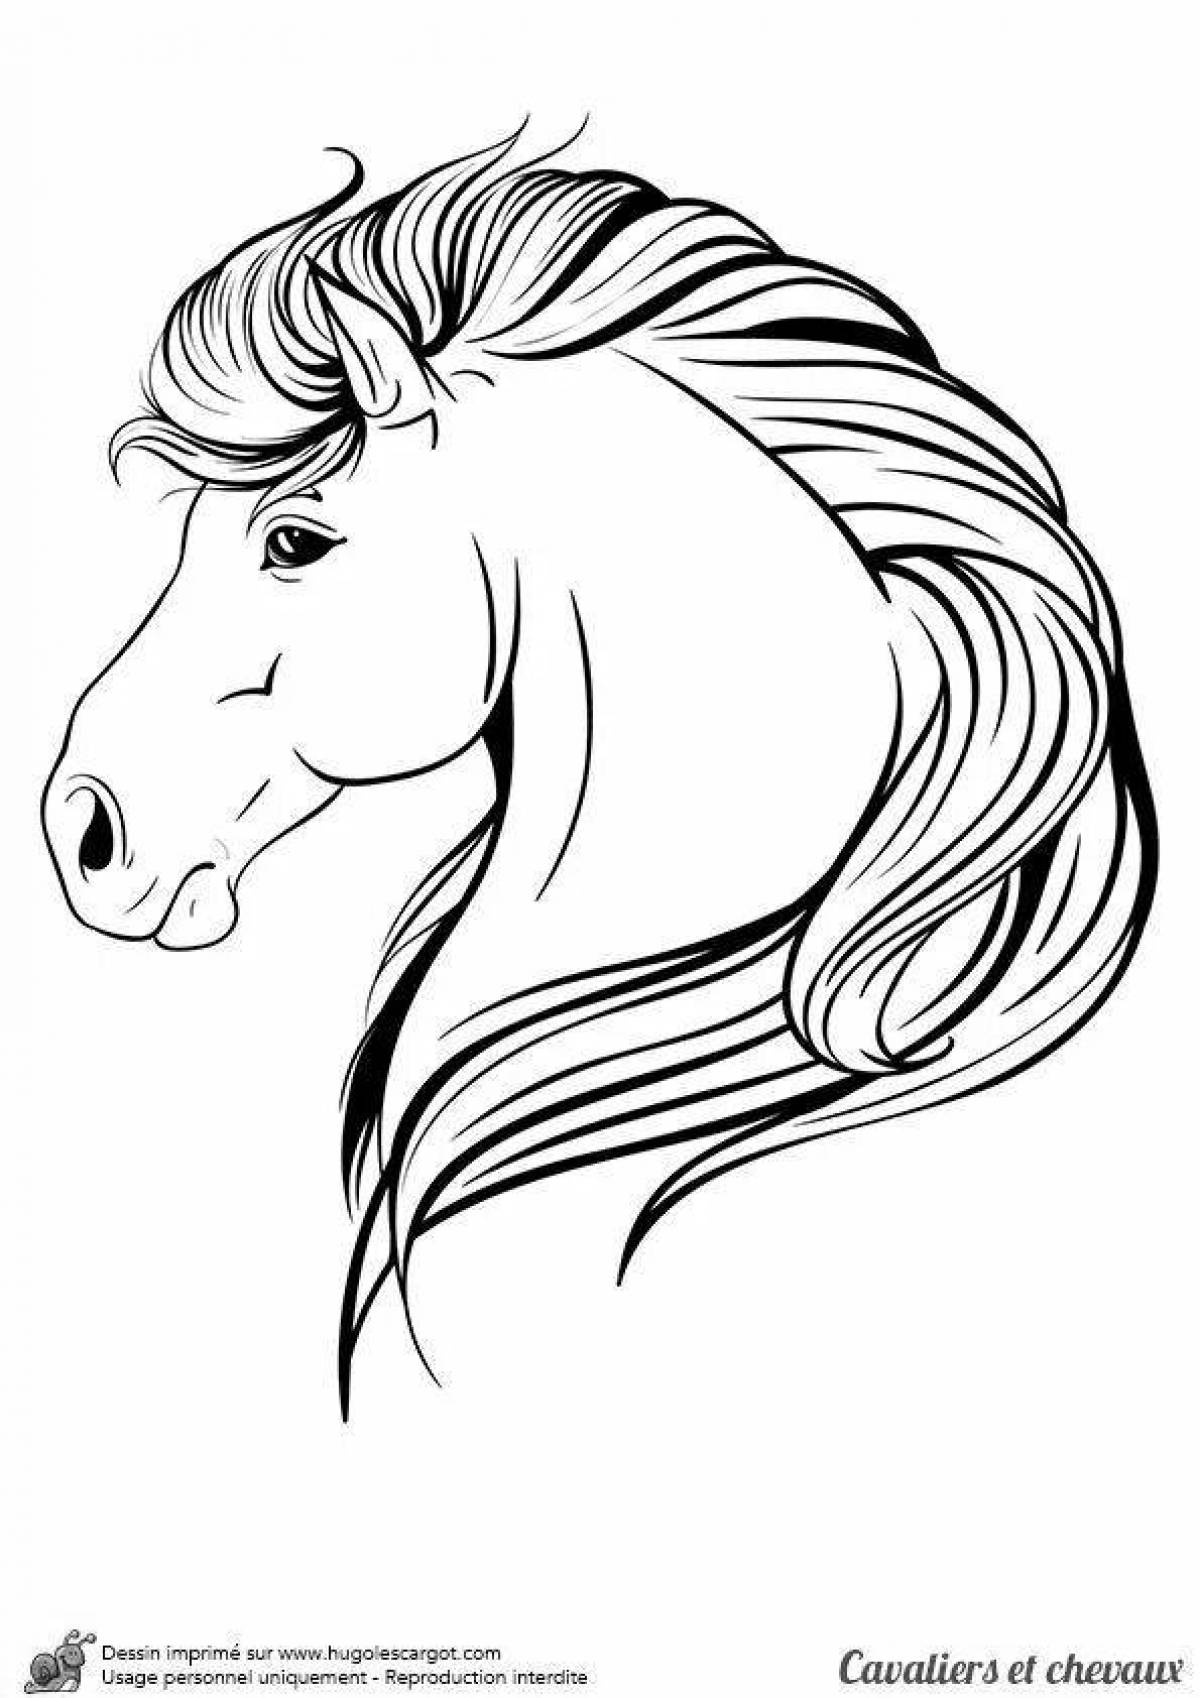 Прекрасная раскраска голова лошади